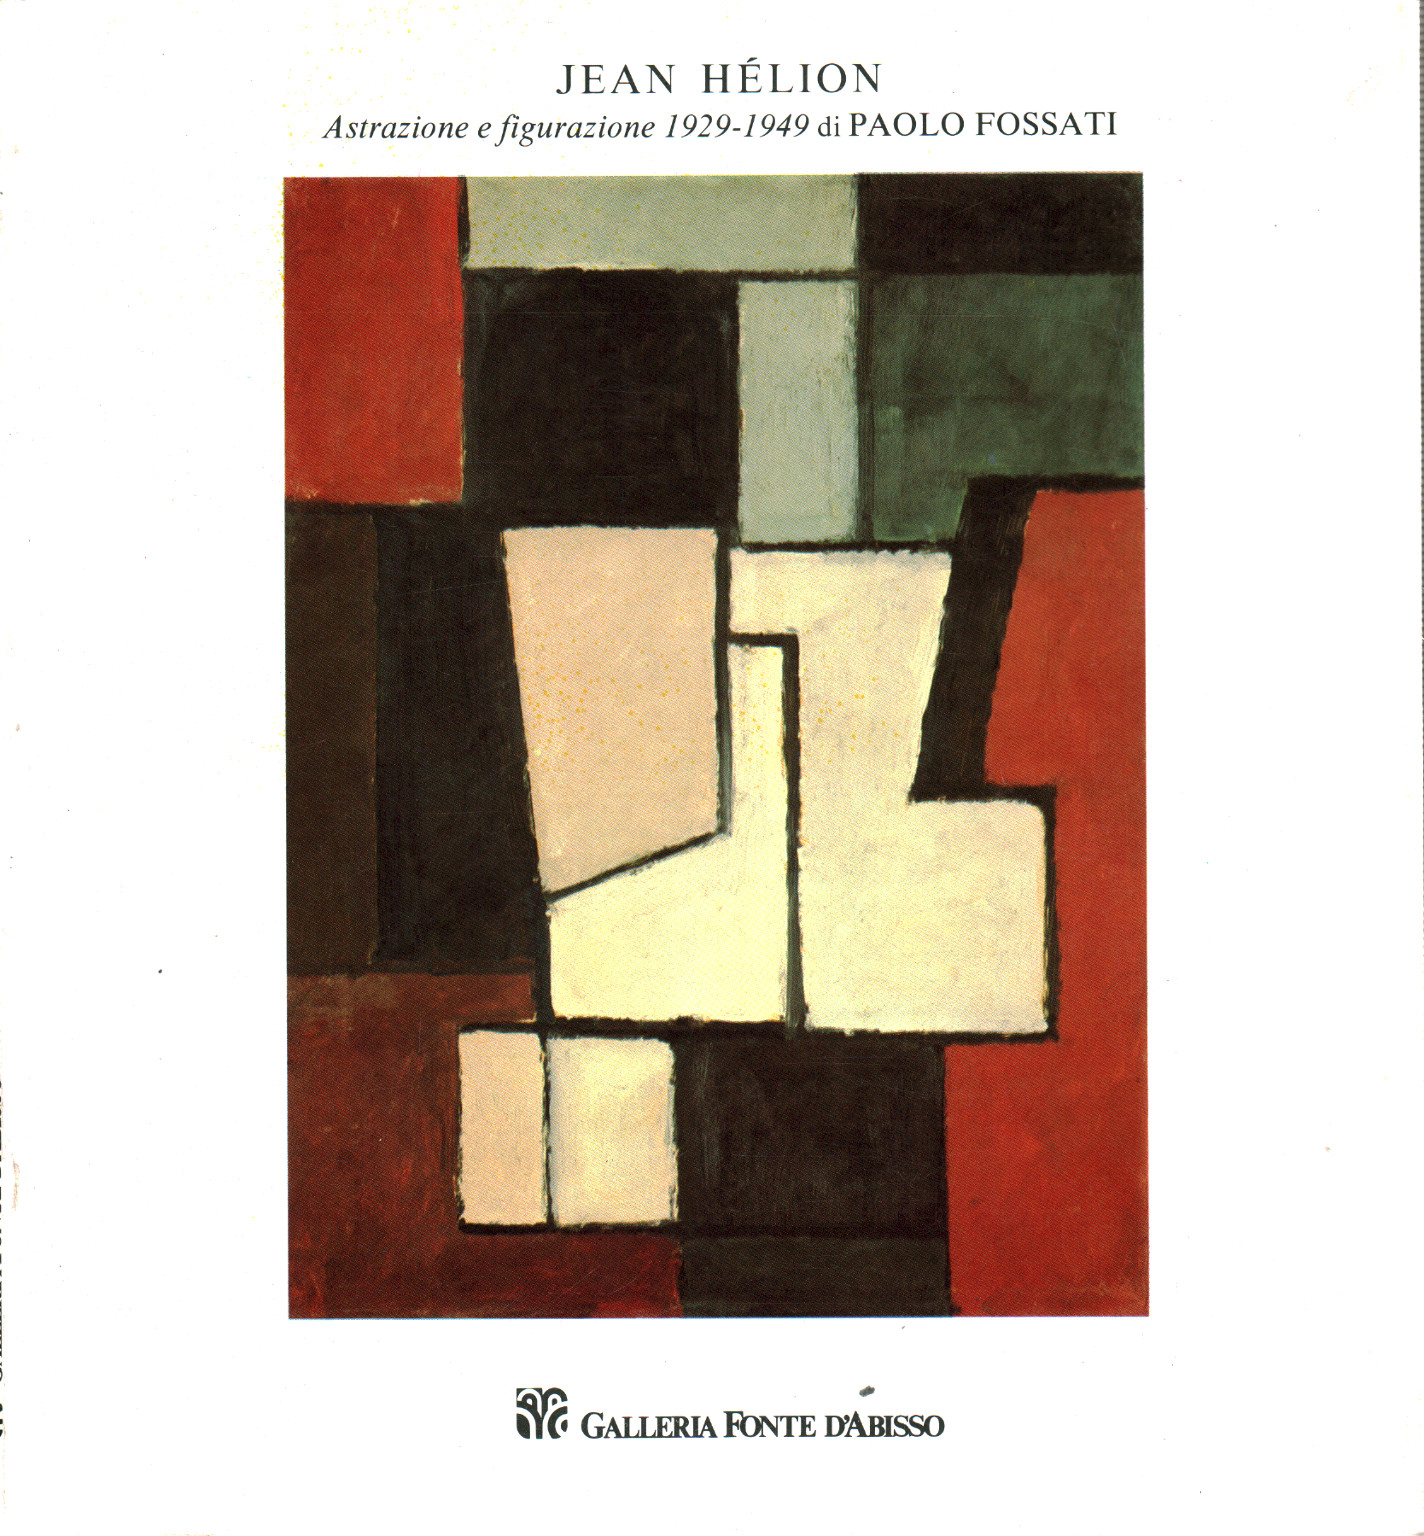 Jean Hèlion. Astrazione e figurazione 1929-1949, s.a.